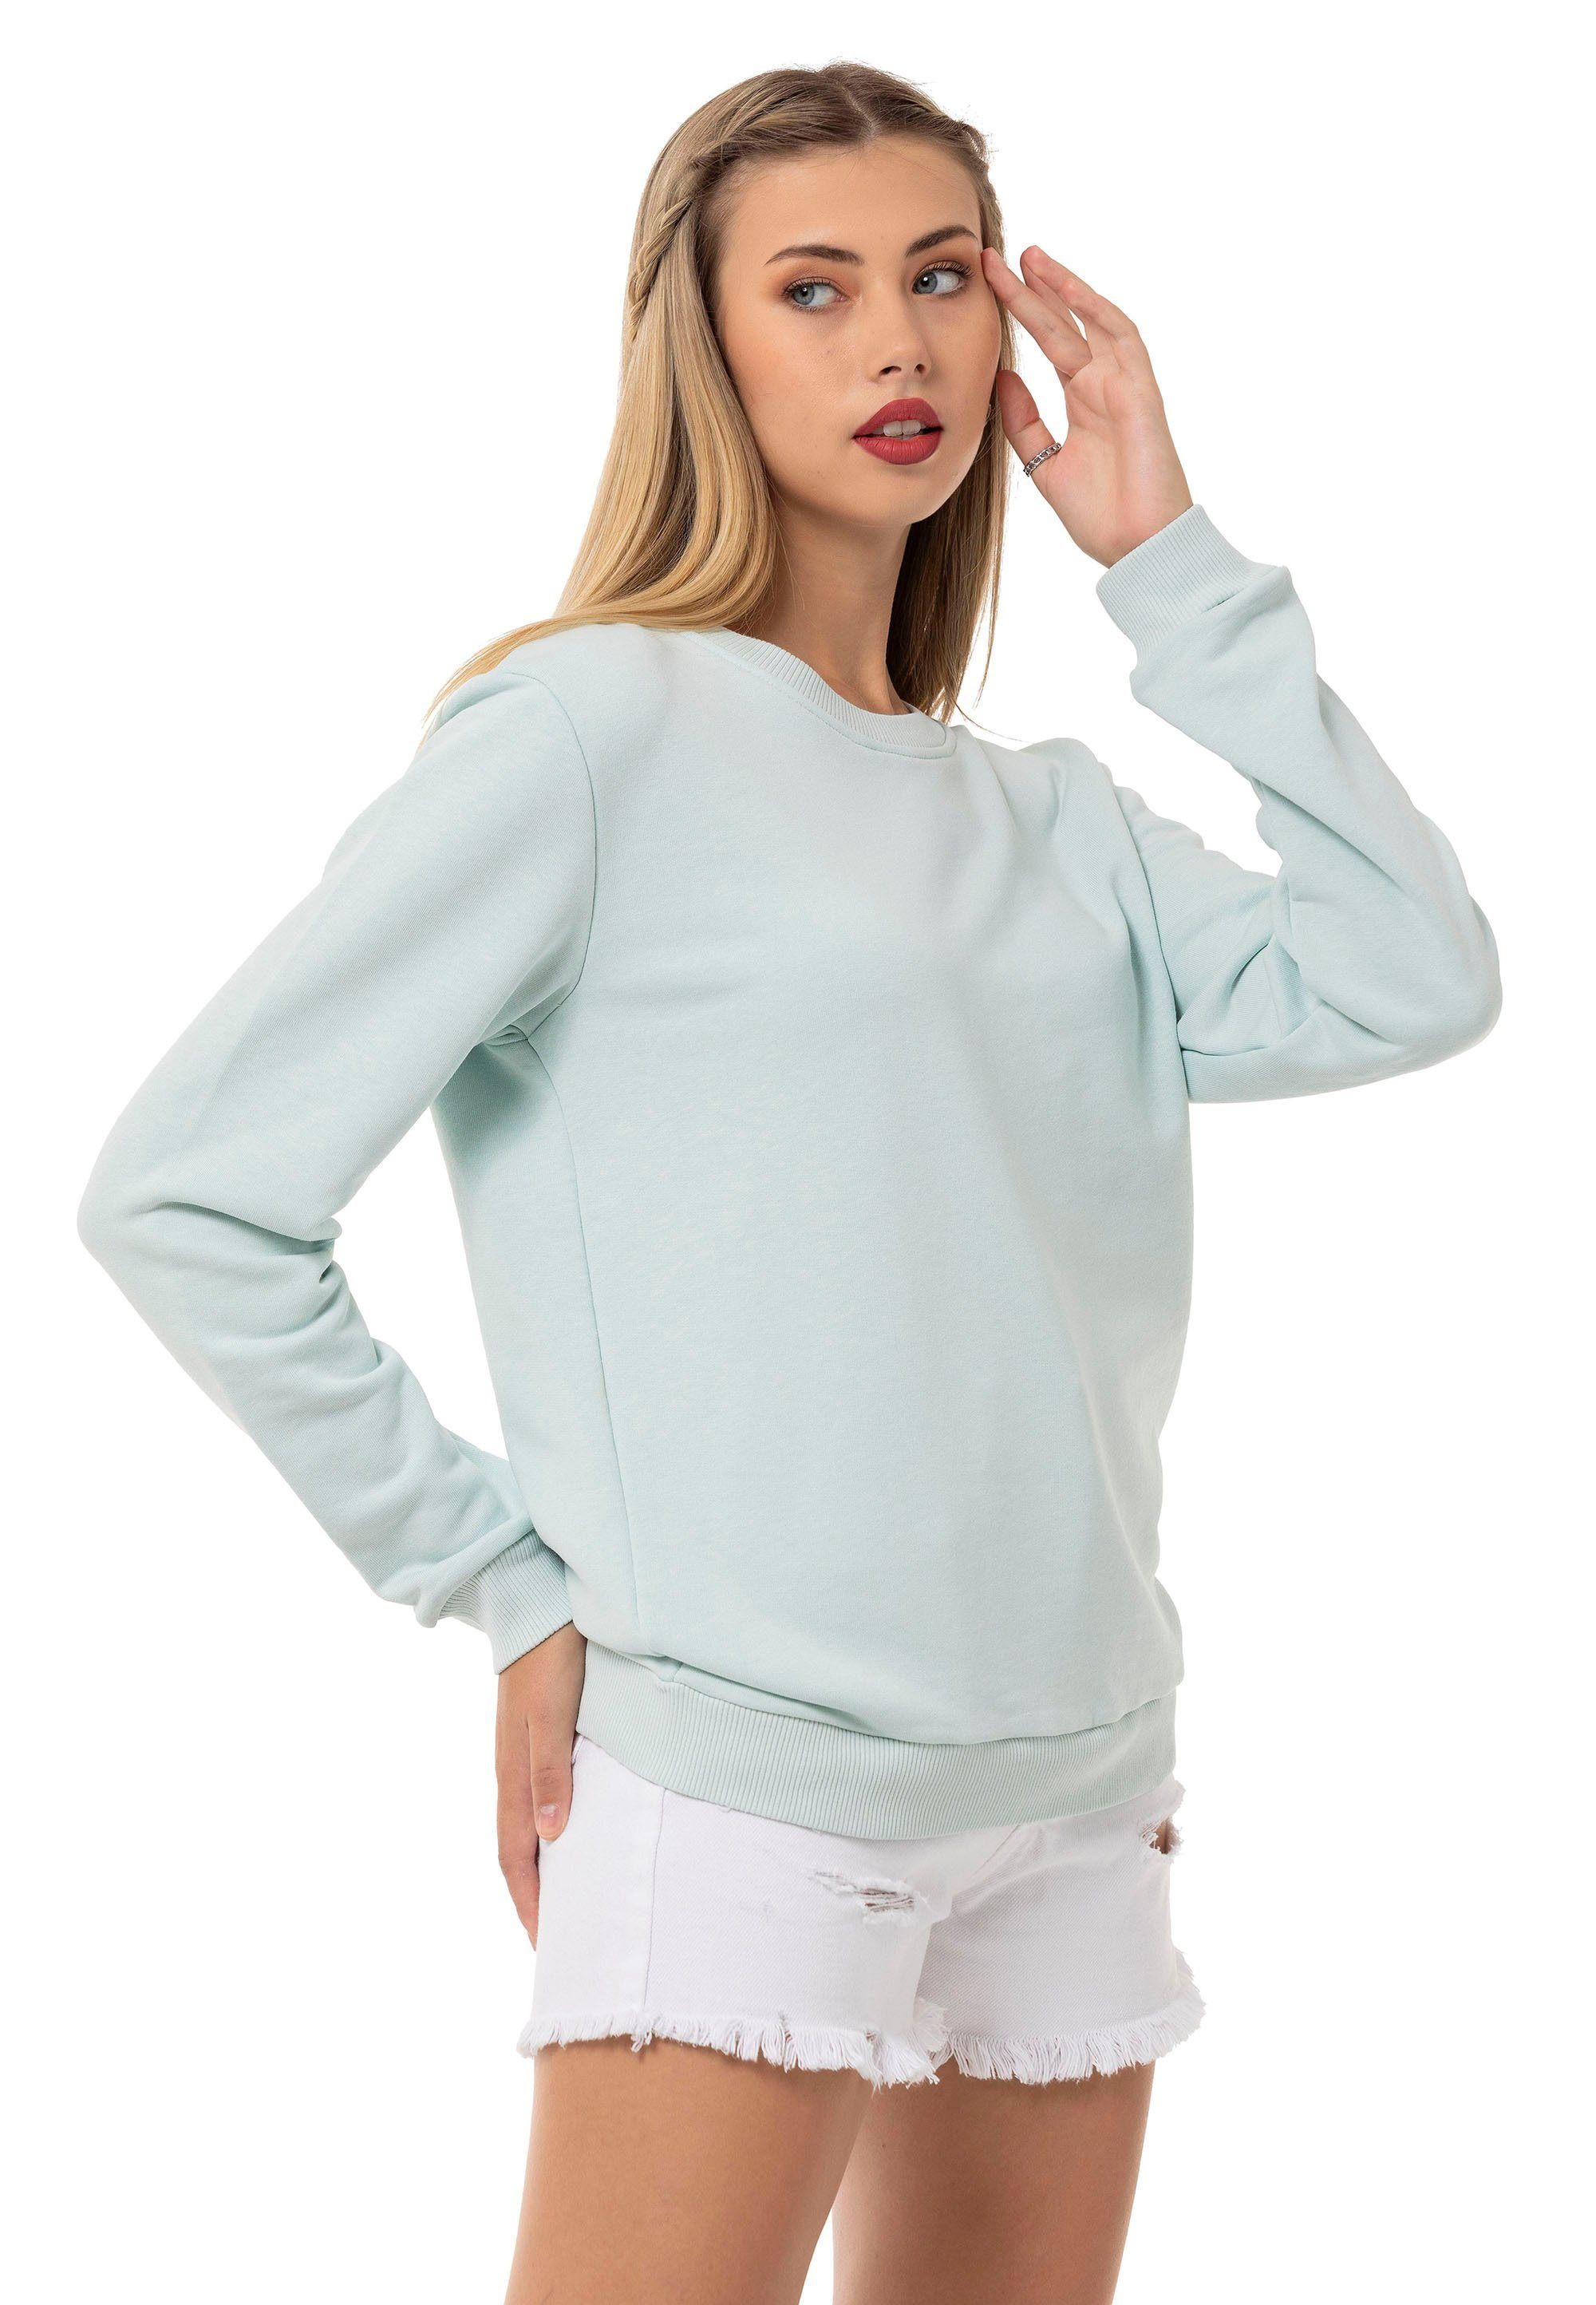 Mint RedBridge Qualität Premium Sweatshirt Rundhals Pullover